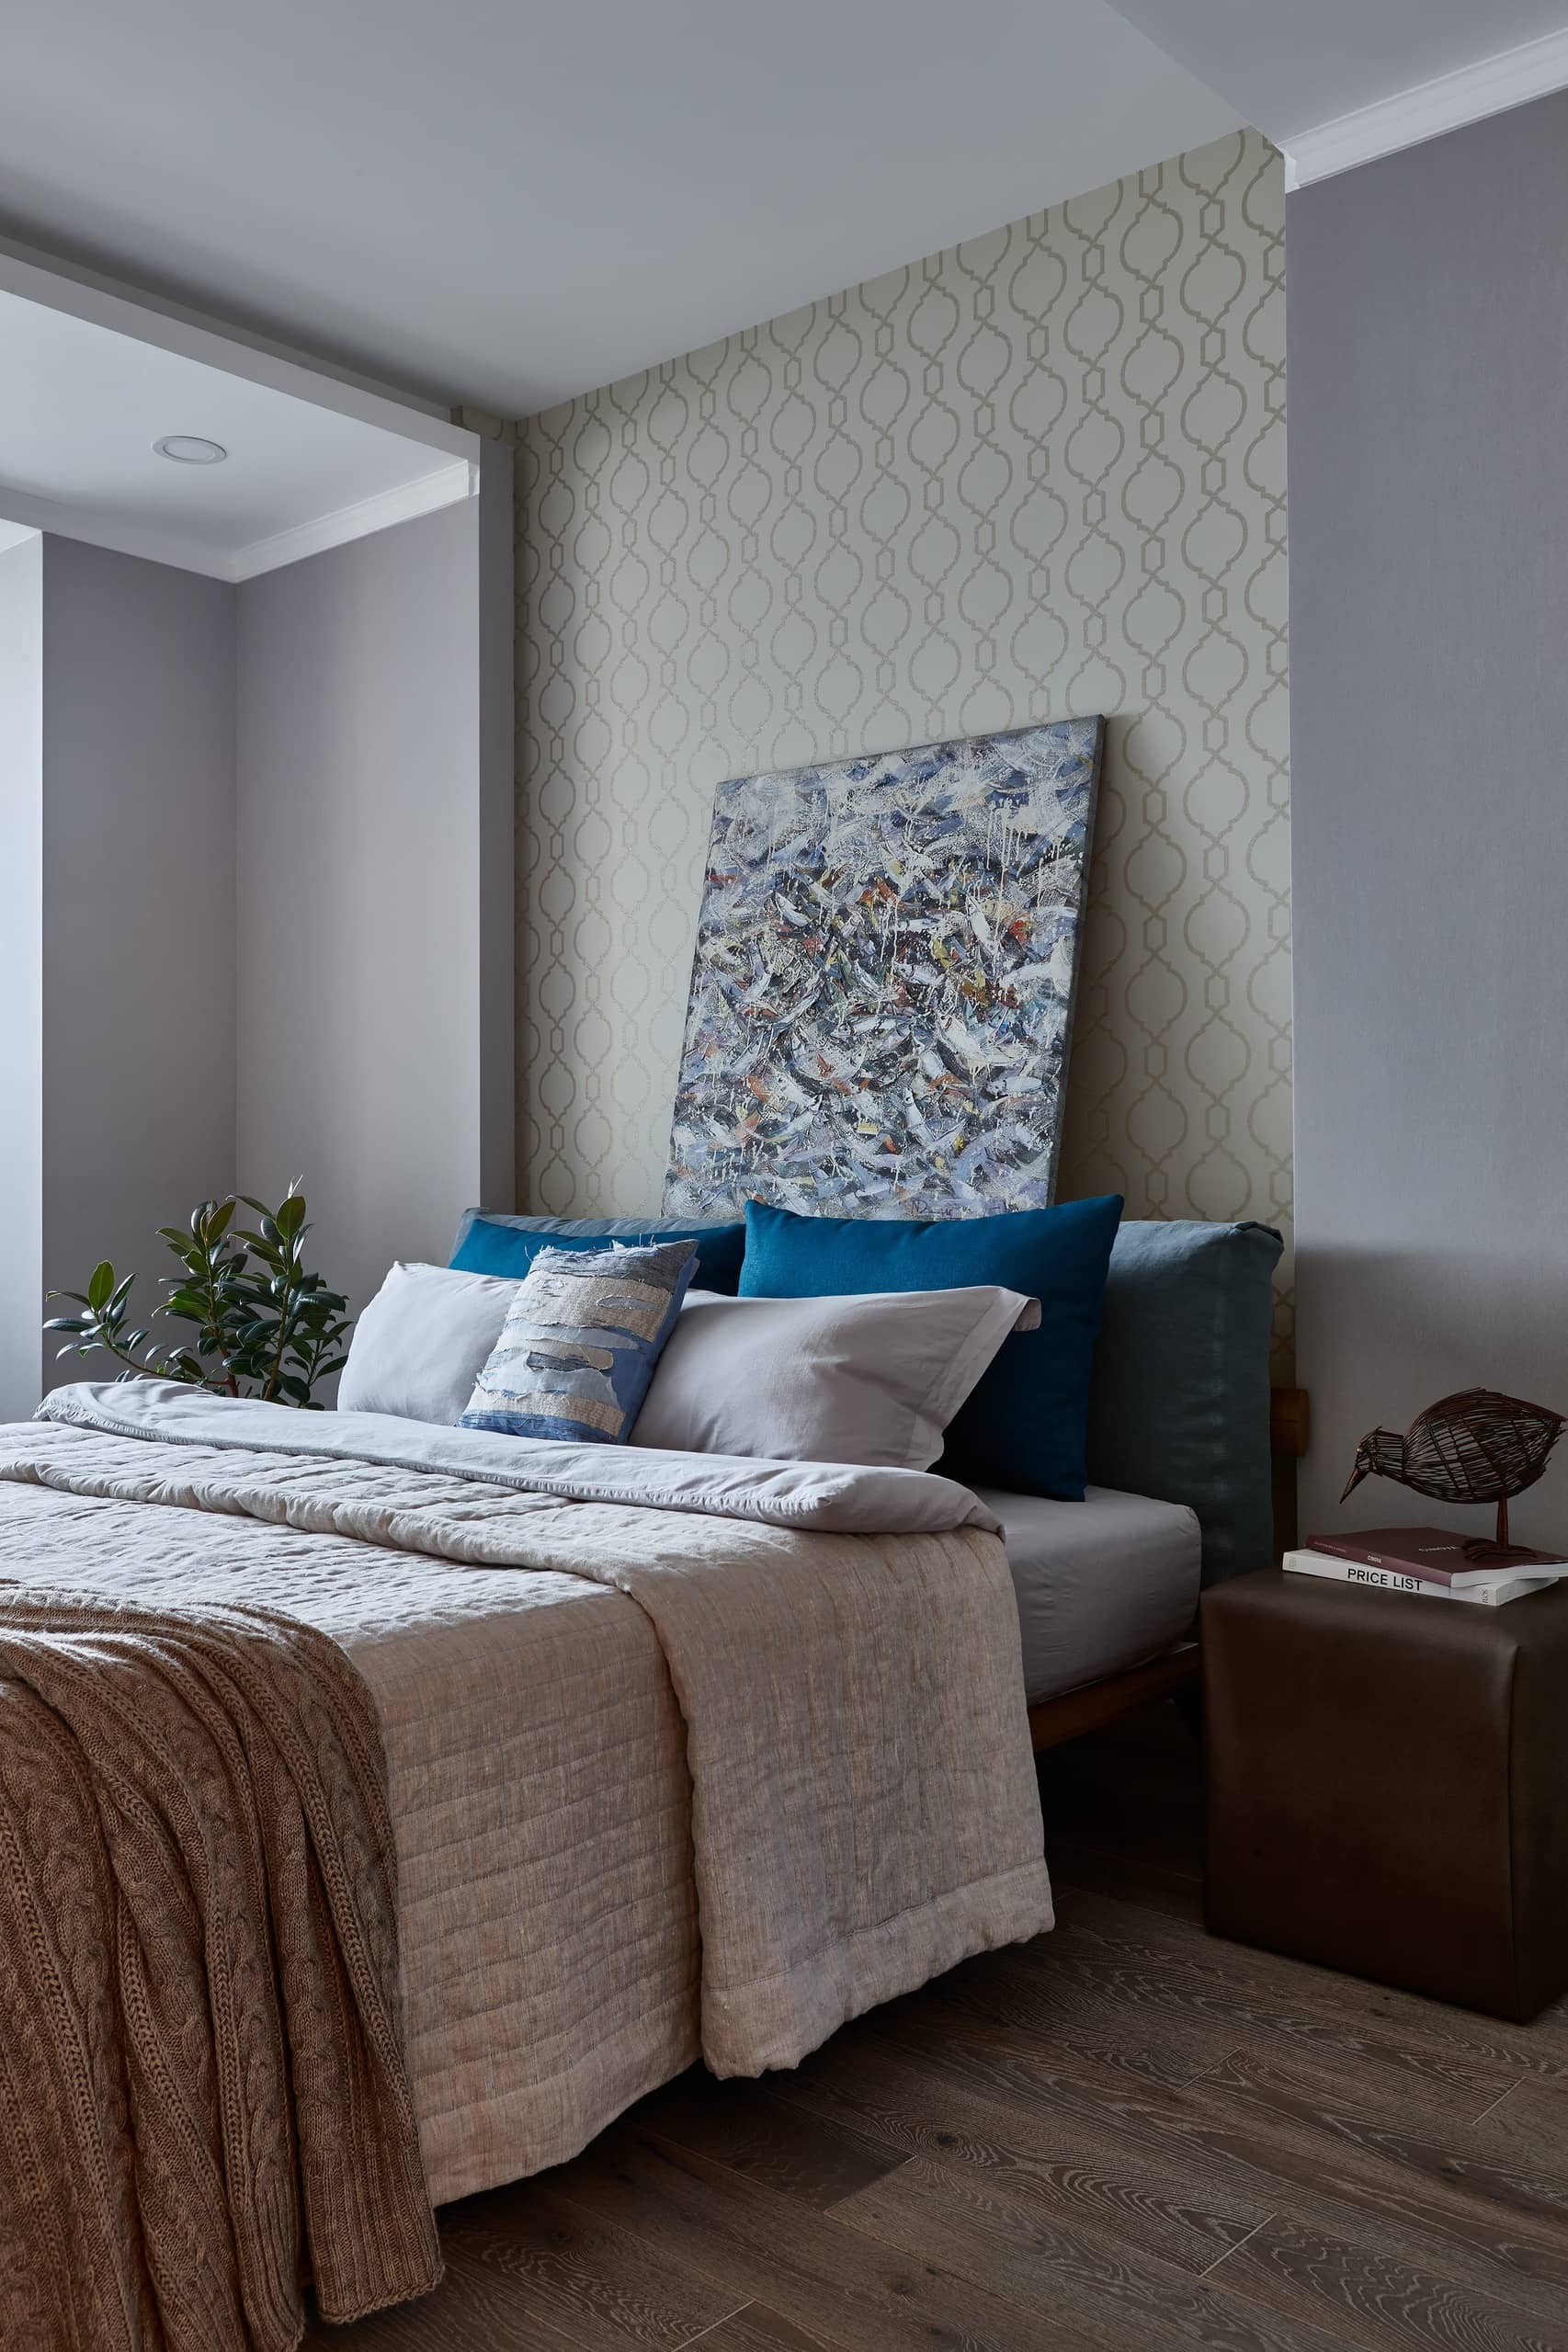 Картина над кроватью выполнена в стиле арт - деко для украшения спальни